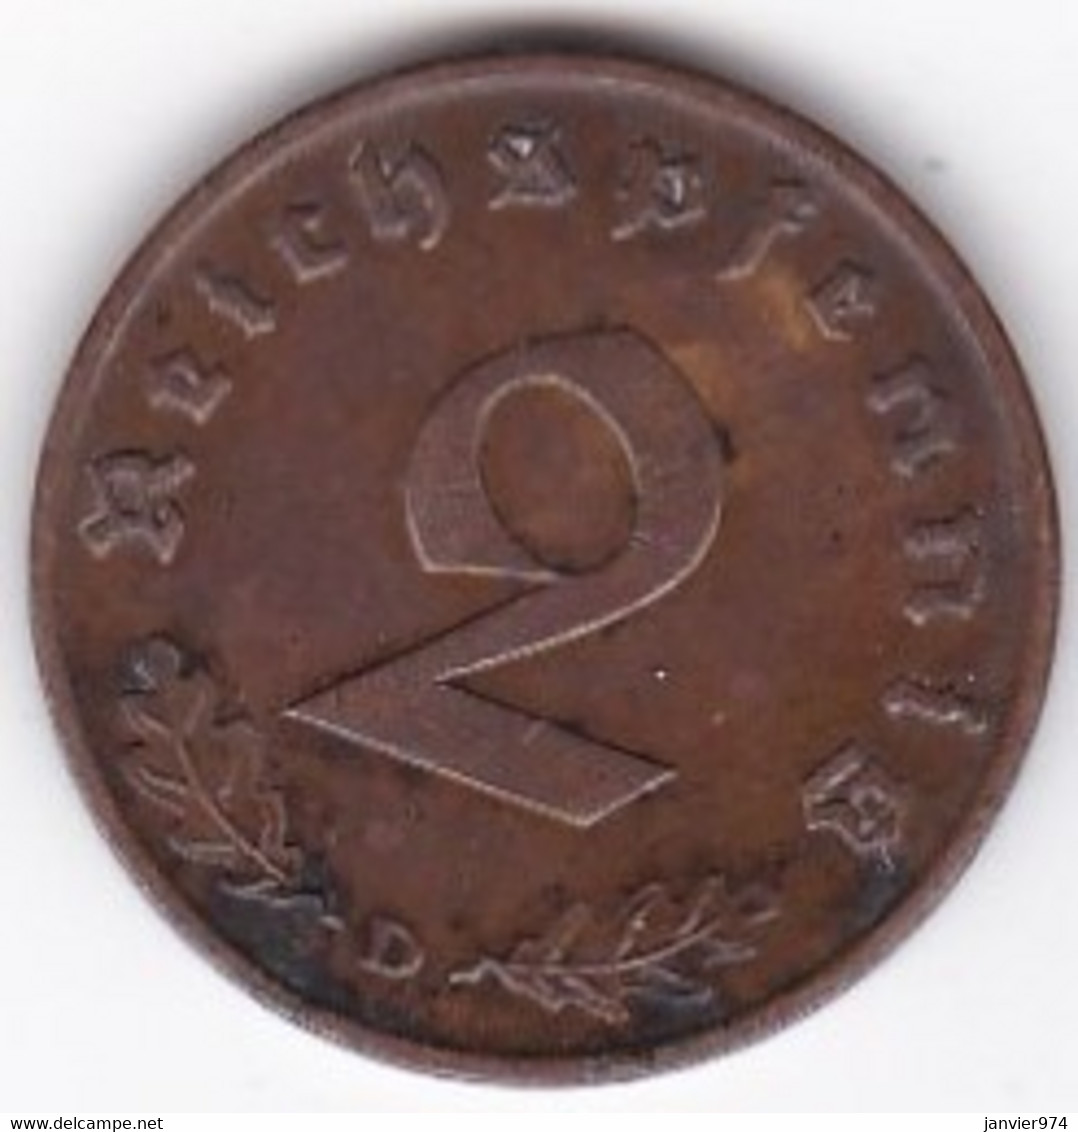 2 Reichspfennig 1937 D Munich. Bronze - 2 Reichspfennig